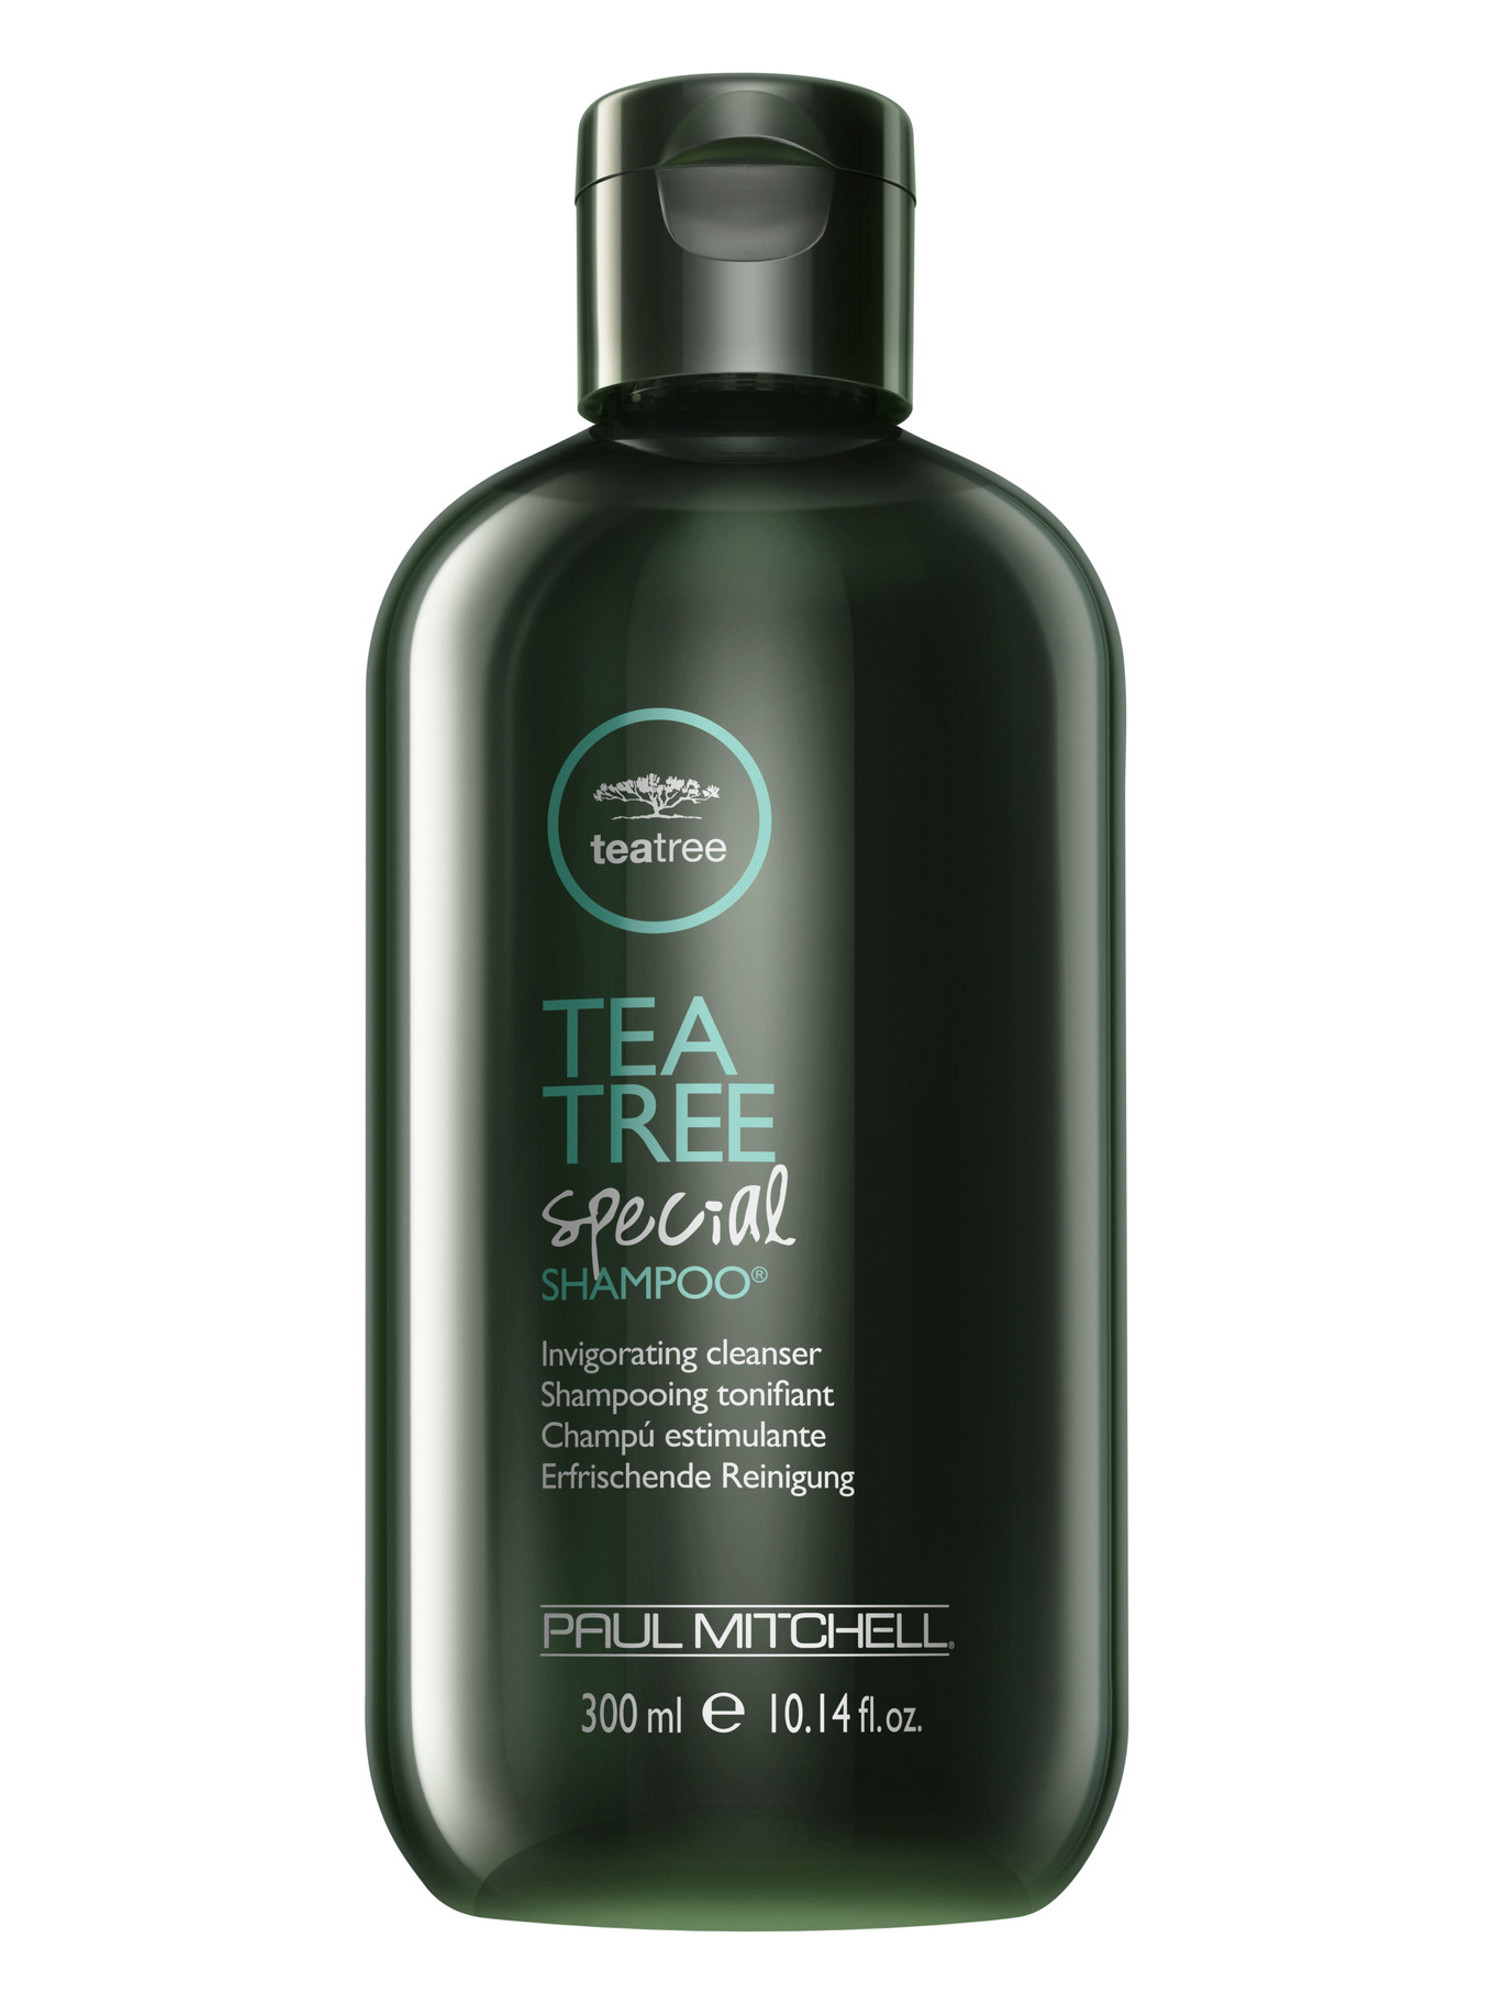 Osvěžující šampon na vlasy Paul Mitchell Tea Tree Special - 300 ml (201113) + DÁREK ZDARMA